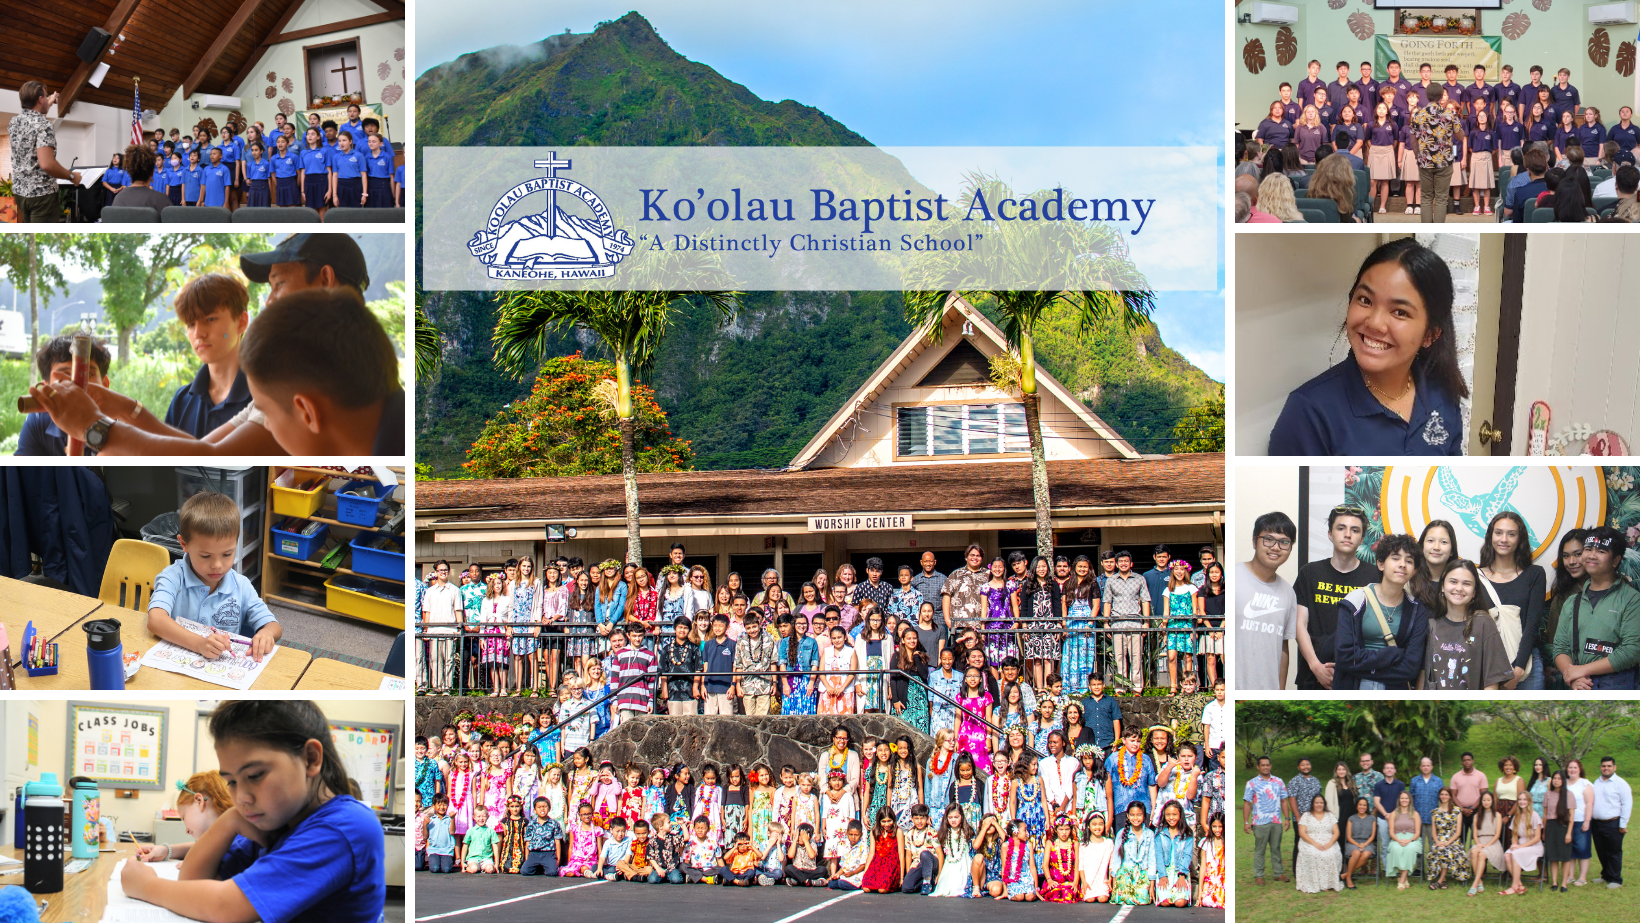 Koolau Baptist Academy